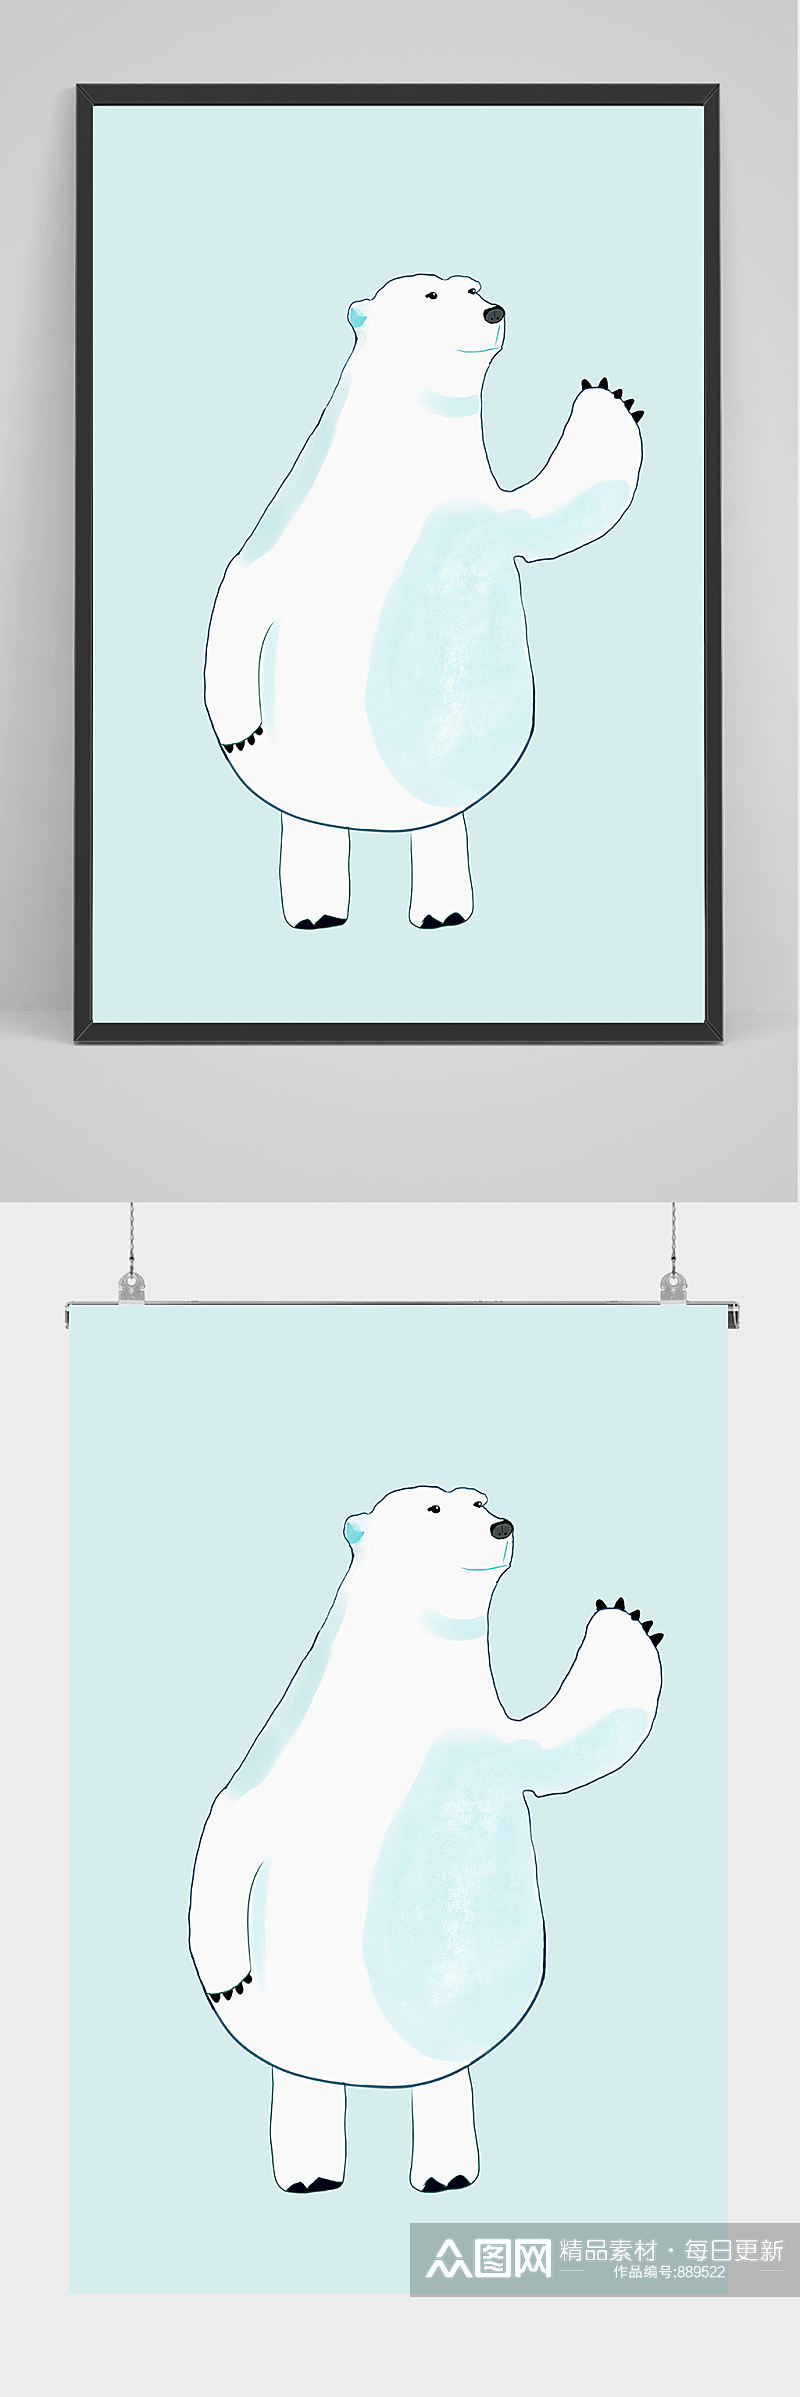 北极熊手绘插画设计素材